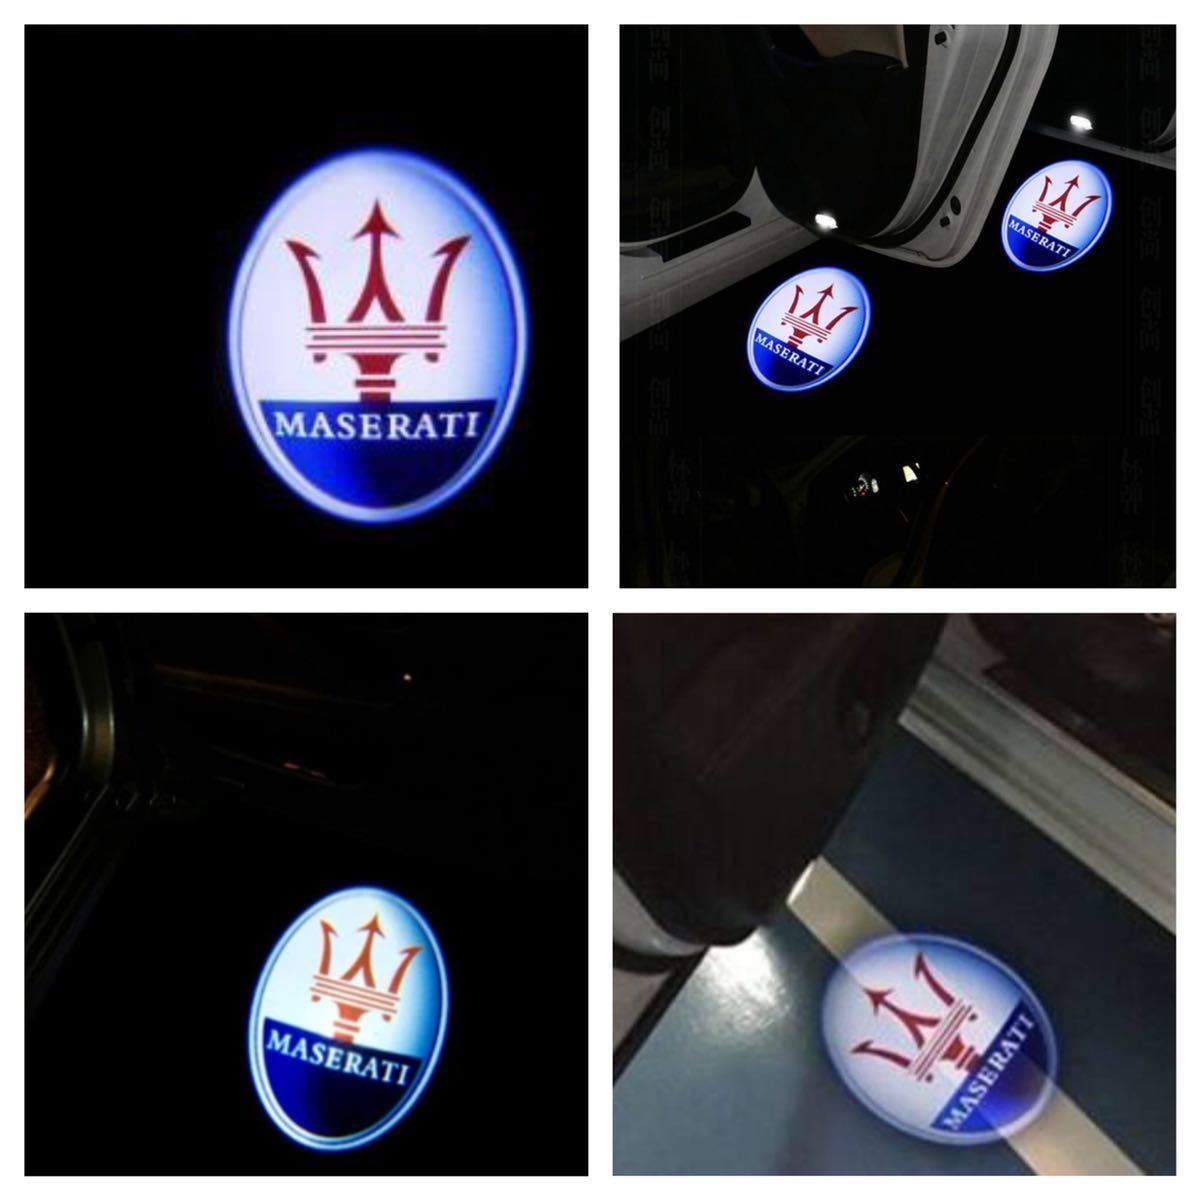 Maserati マセラティ ロゴ プロジェクター カーテシランプ LED 純正交換 レヴァンテ クアトロポルテ ギブリ プロジェクタードア ライト_画像2